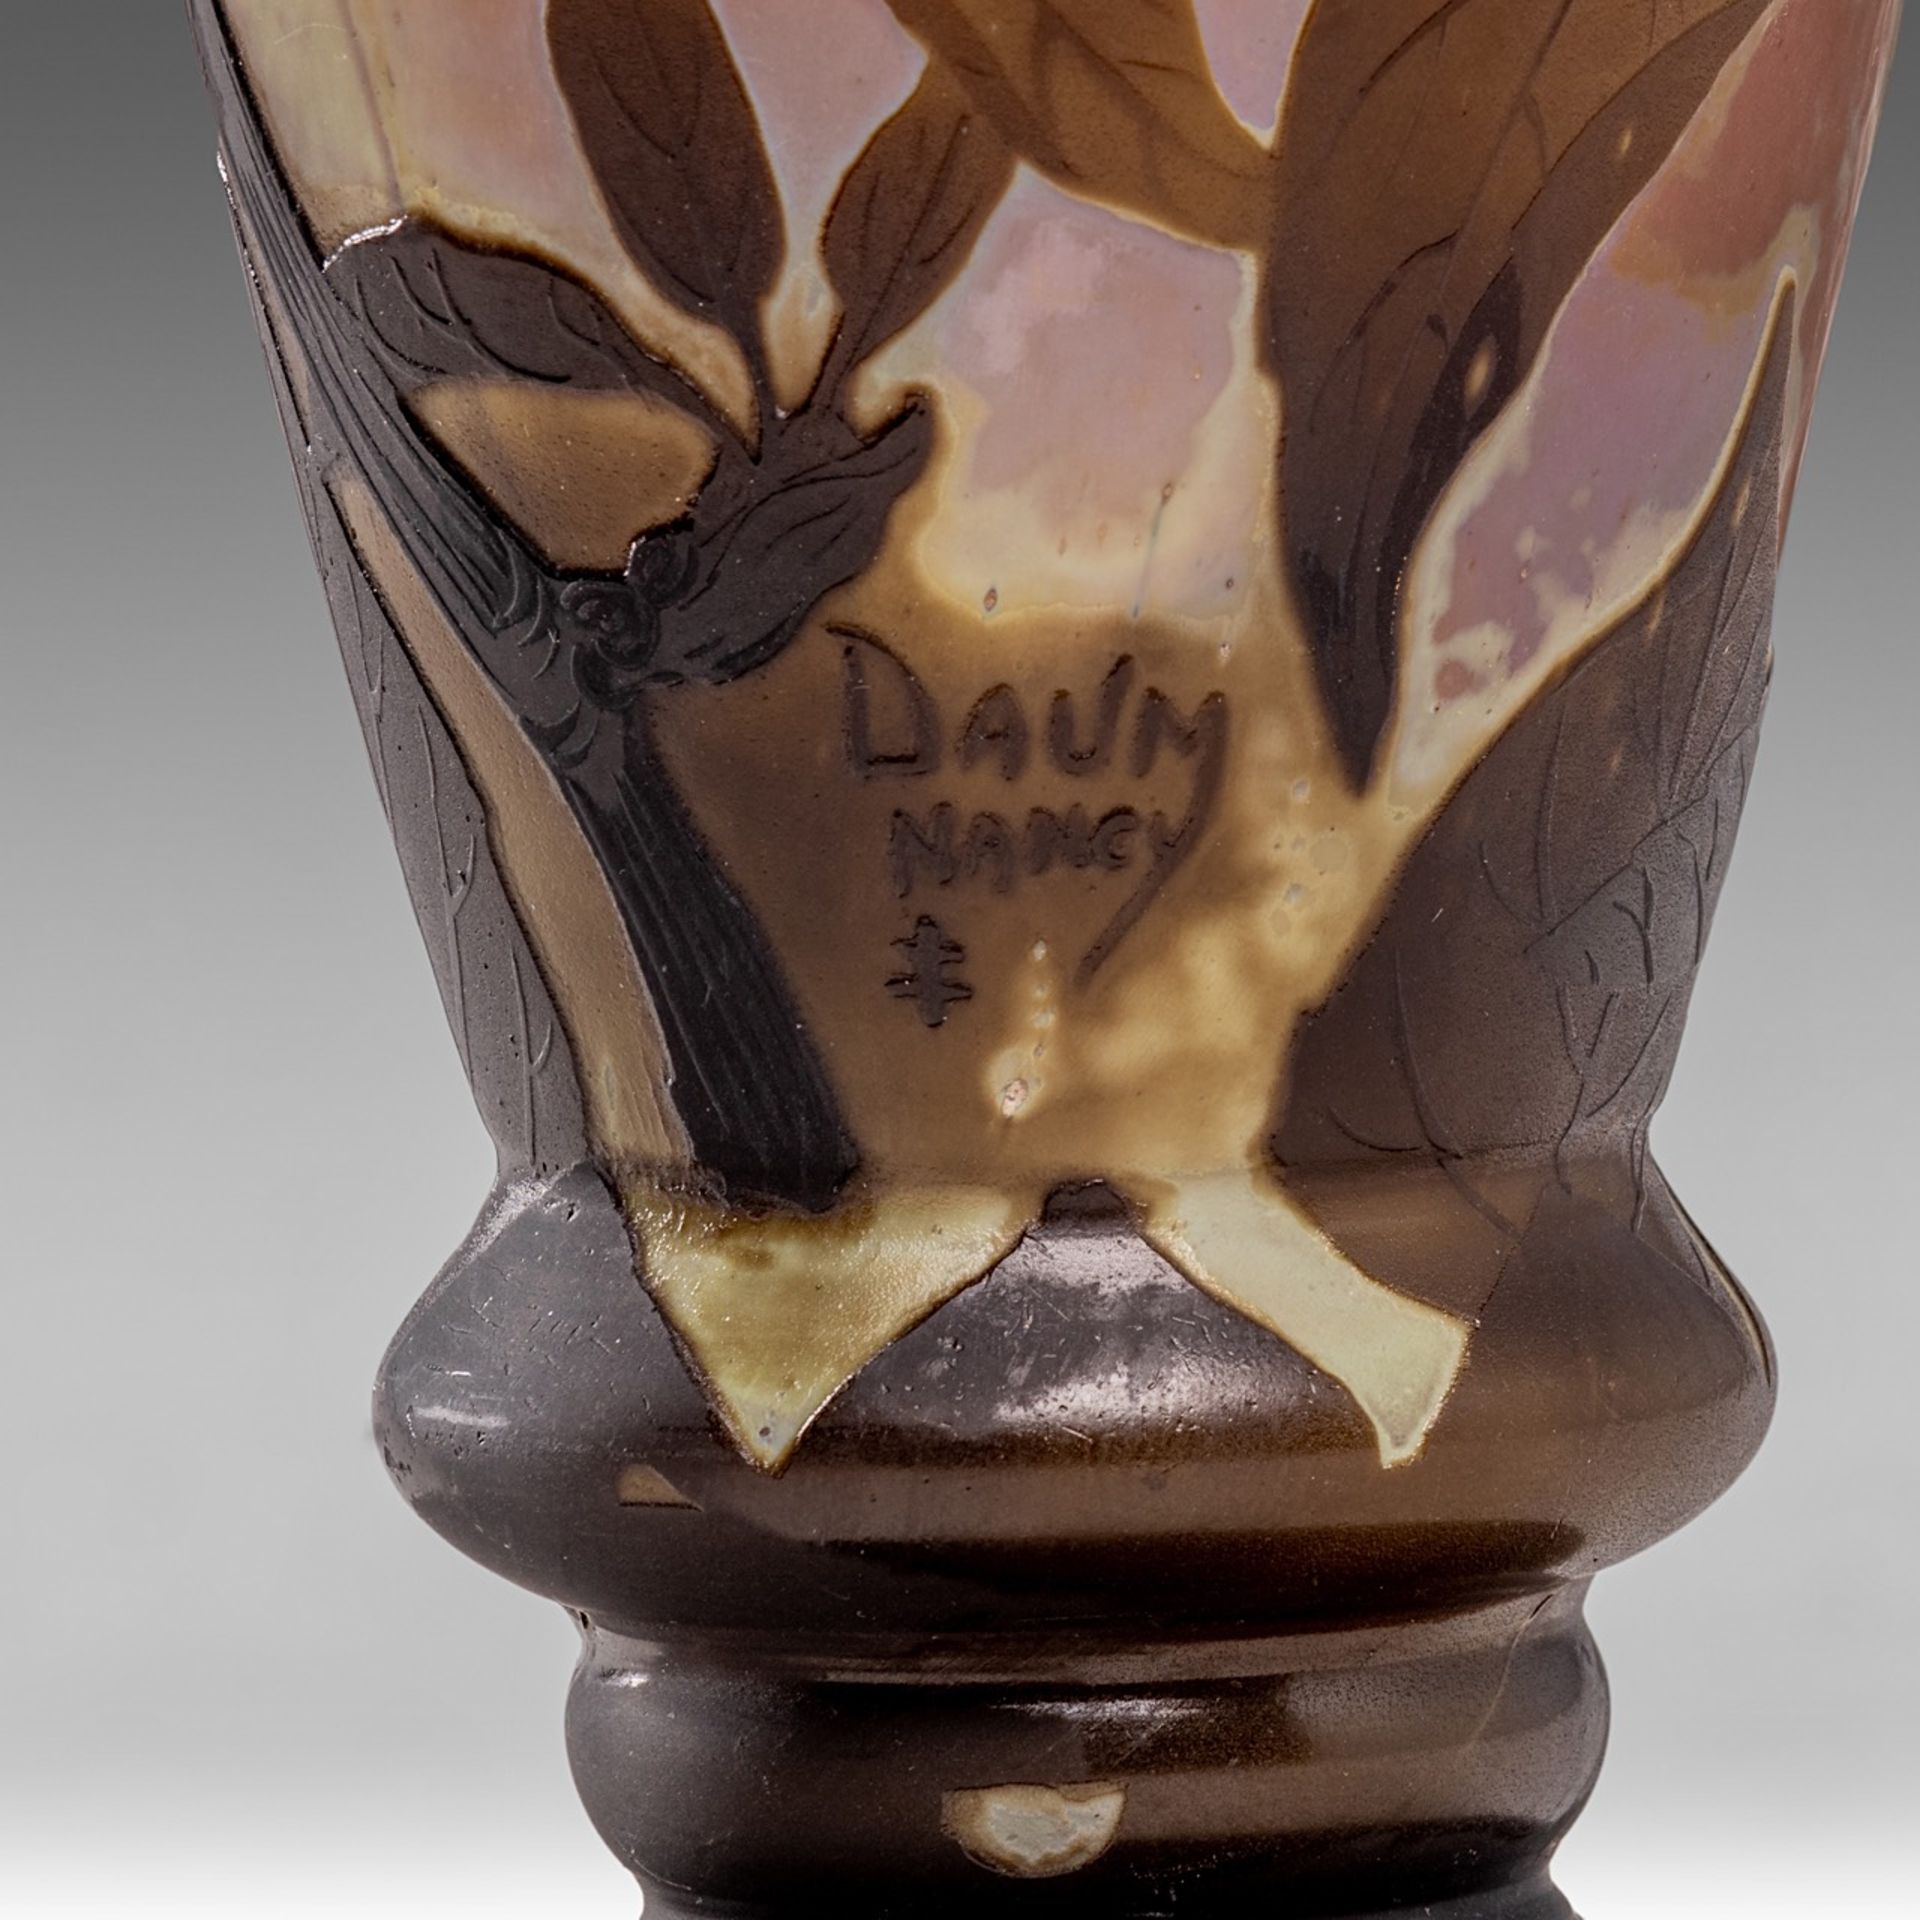 A fine Art Nouveau floral decorated cameo glass paste vase, by Daum, Nancy, H 31,5 cm - Image 8 of 8